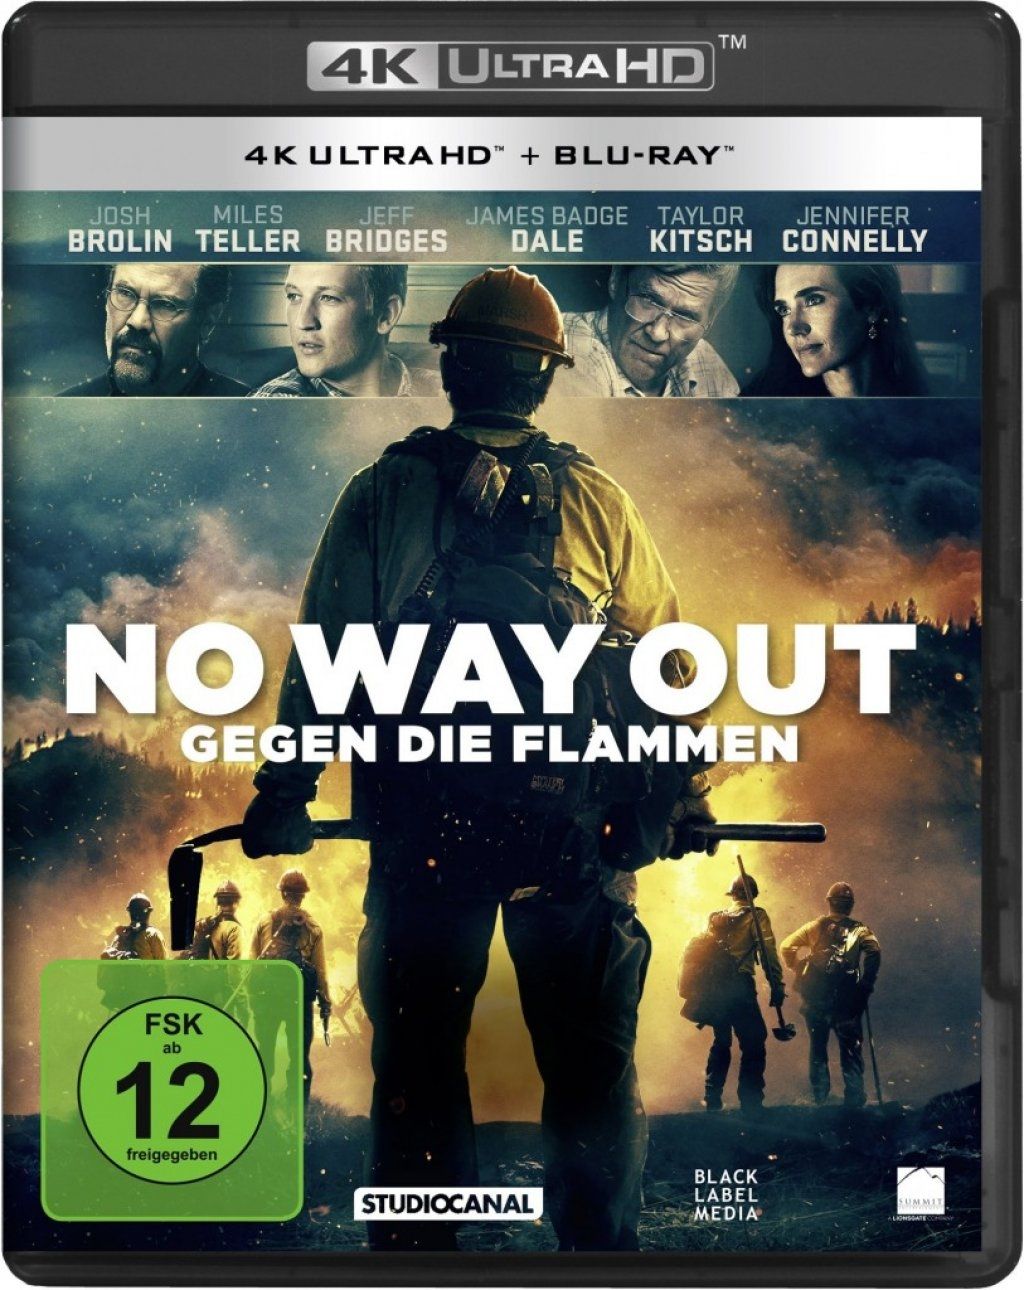 No Way Out - Gegen die Flammen (2 Discs) (UHD BLURAY + BLURAY)